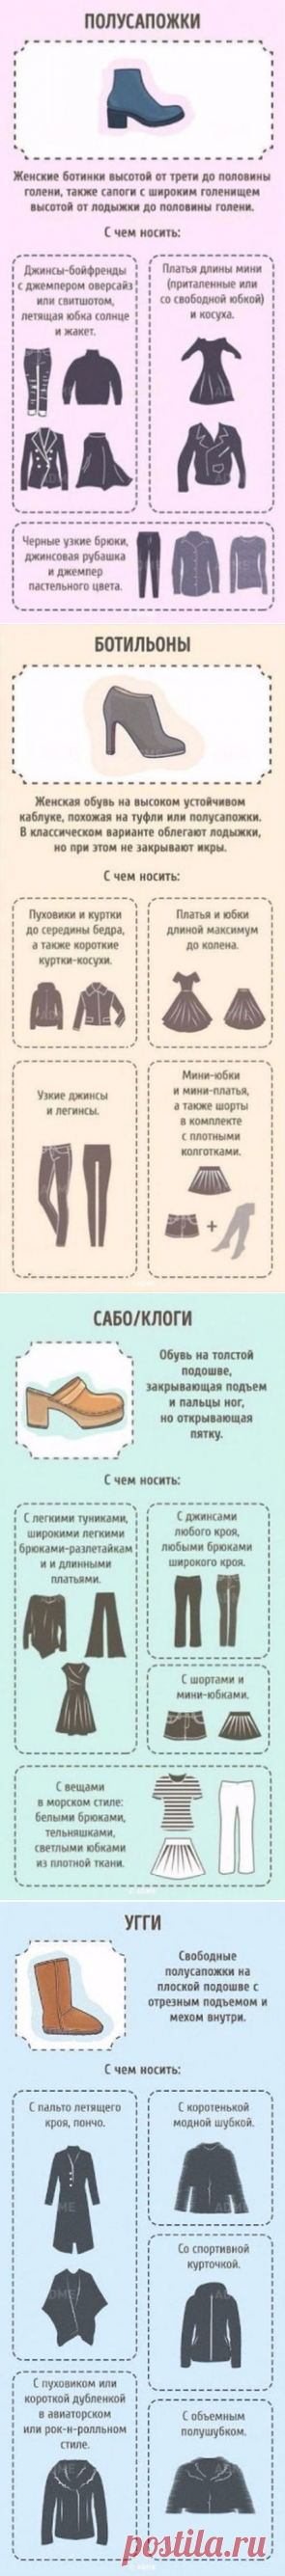 Правильное сочетание одежды и обуви: инфографика — Полезные советы